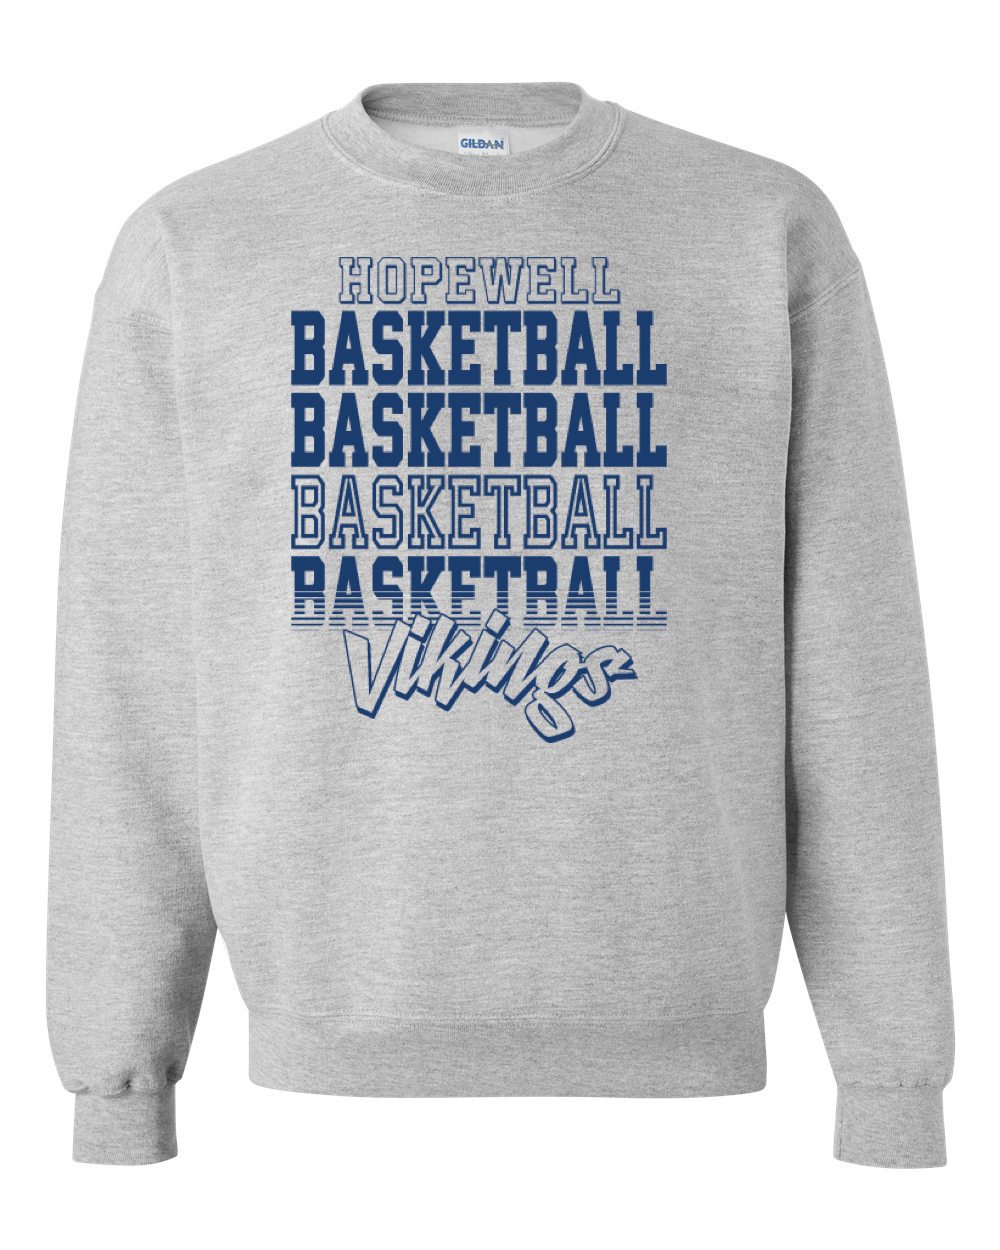 Hopewell Booster Crew Sweatshirt Grey (Basketball Life)